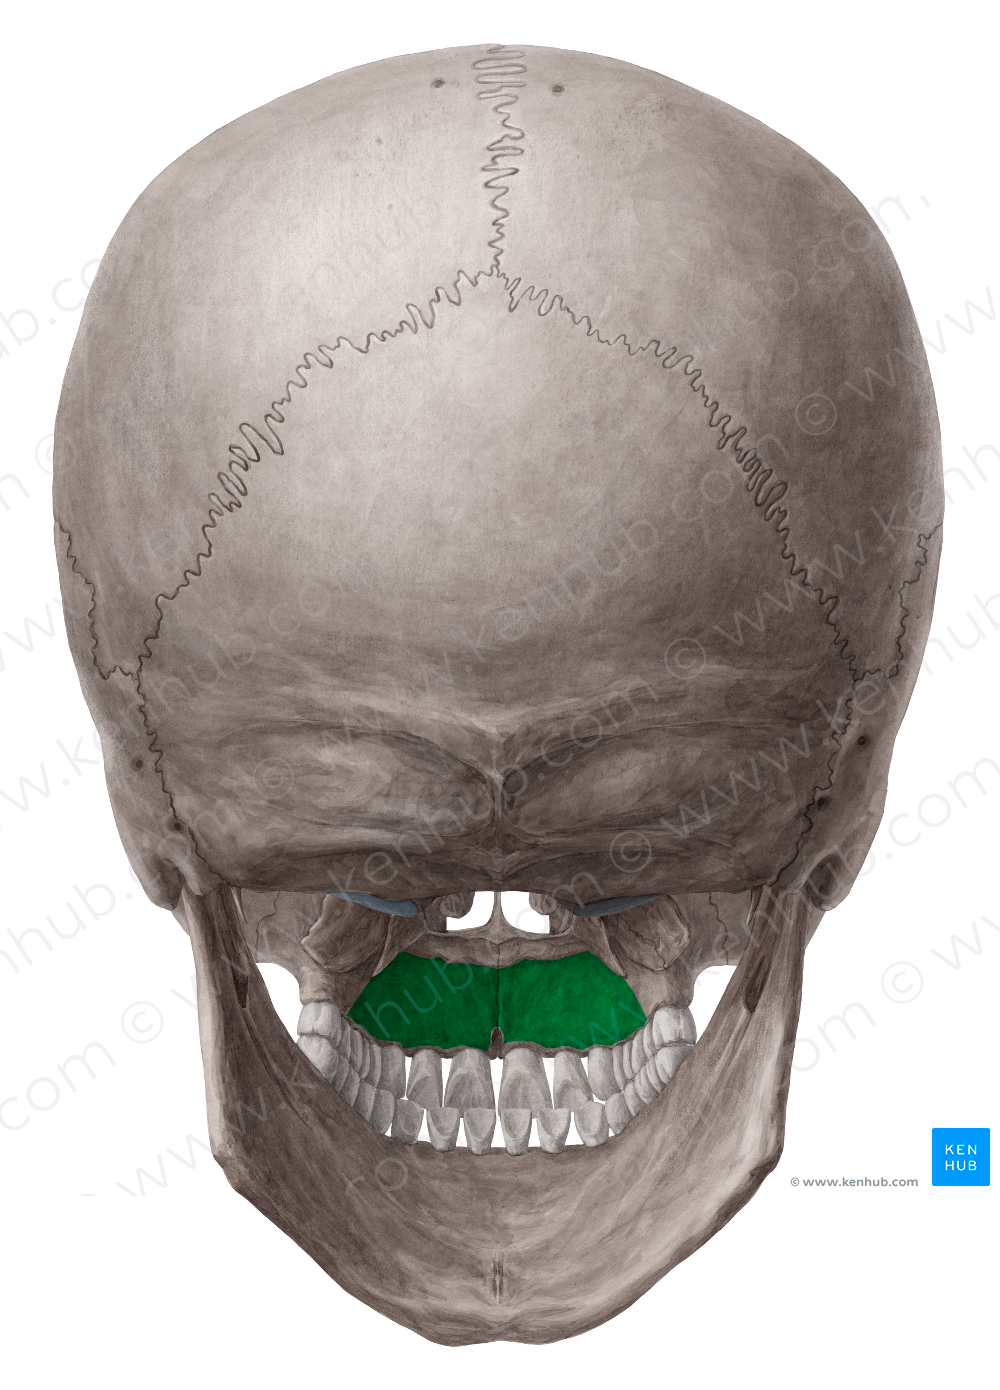 Palatine process of maxilla (#8234)